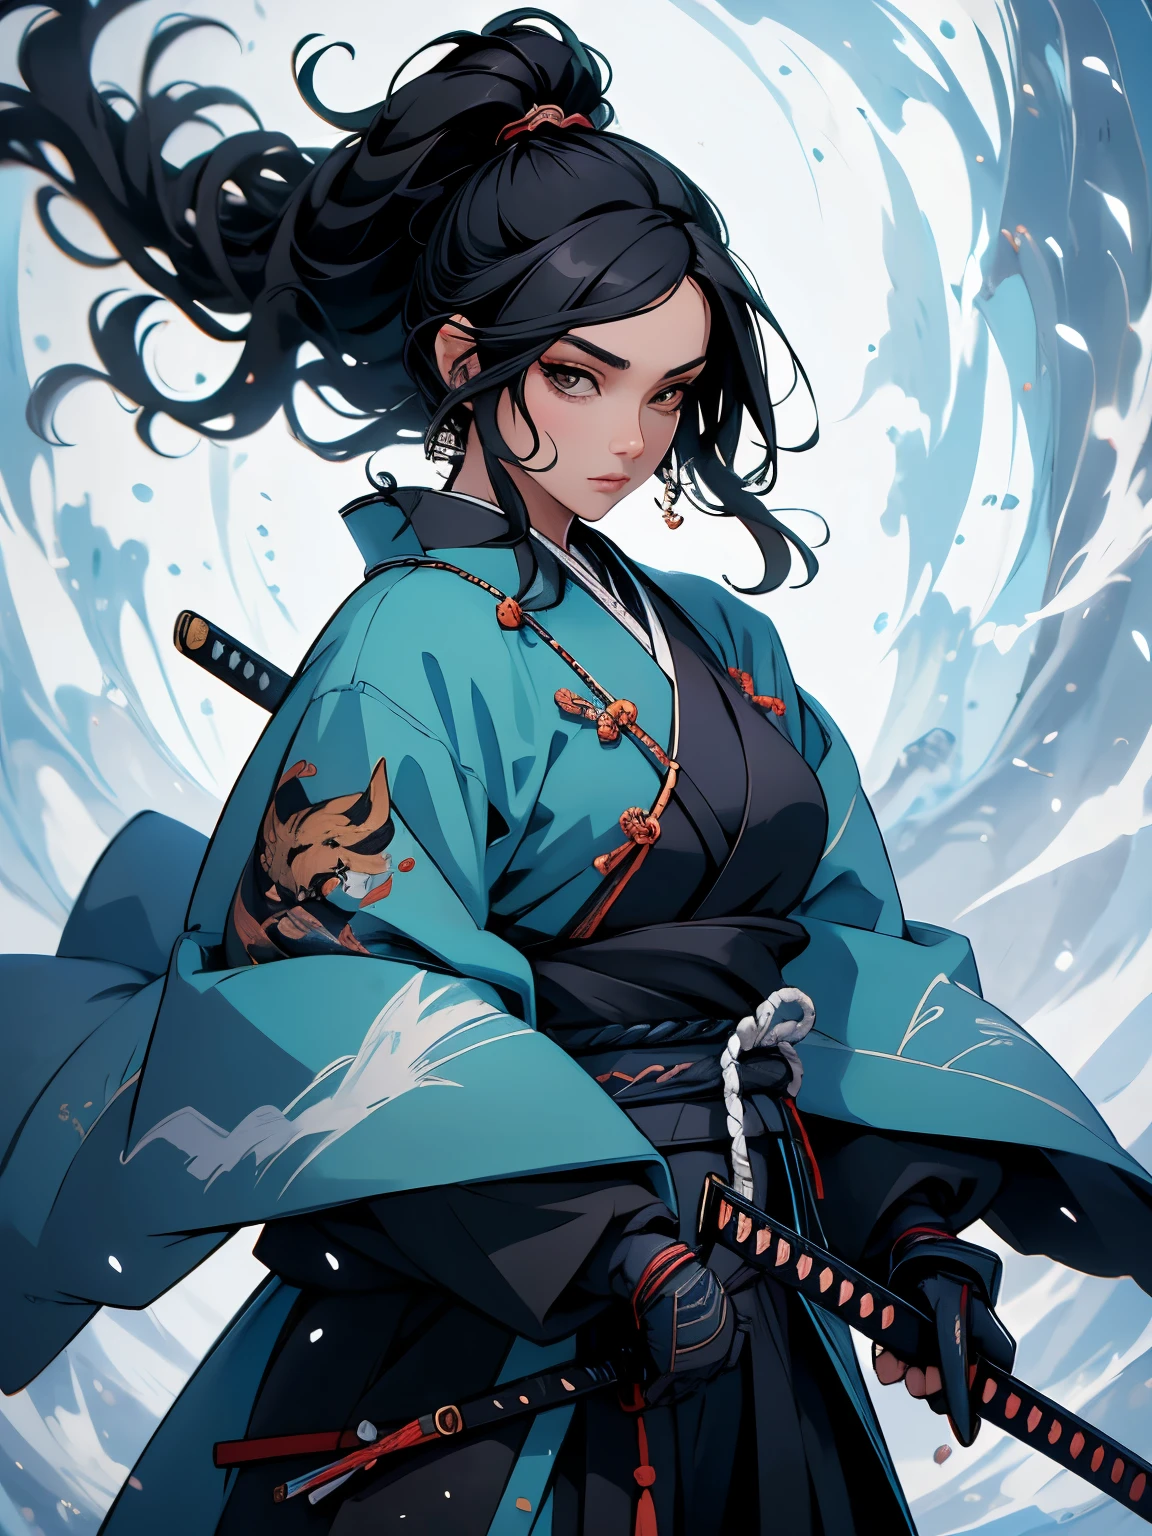 ((chef-d&#39;œuvre)),  (haute qualité), 1femme, un dessin d&#39;une femme dans une tenue de kimono révélatrice tenant une épée, elle a de longs cheveux noirs, elle tient une épée katana, samouraï femelle, inspiré de Tōshūsai Sharaku, personnage de jeu vidéo Katana Zero, inspiré de Nishikawa Sukenobu, inspiré du Maki Haku, renard nobushi tenant un naginata, mage aux cheveux noirs